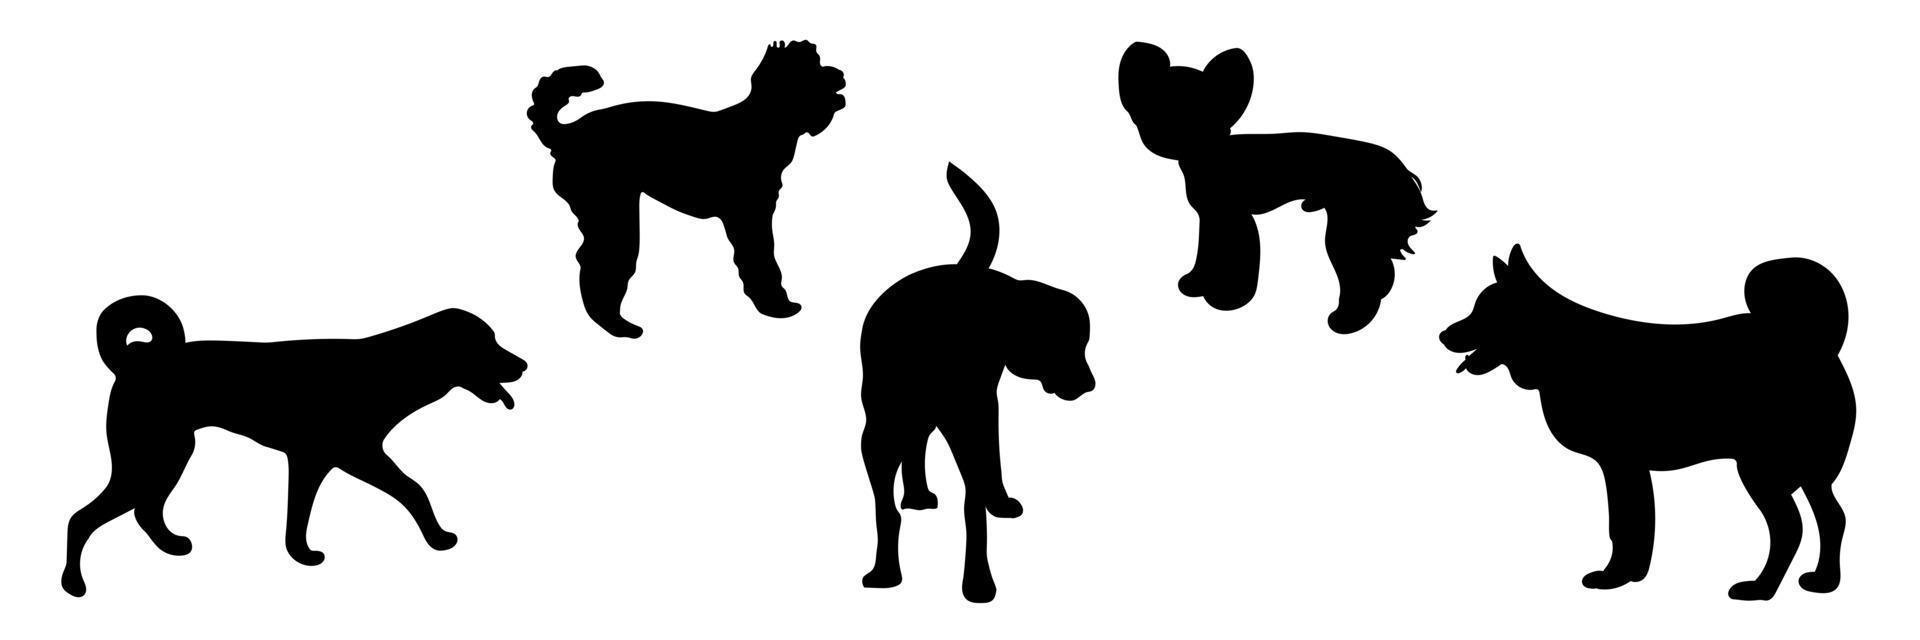 siluetas de perros en diferentes poses, siluetas de animales vector